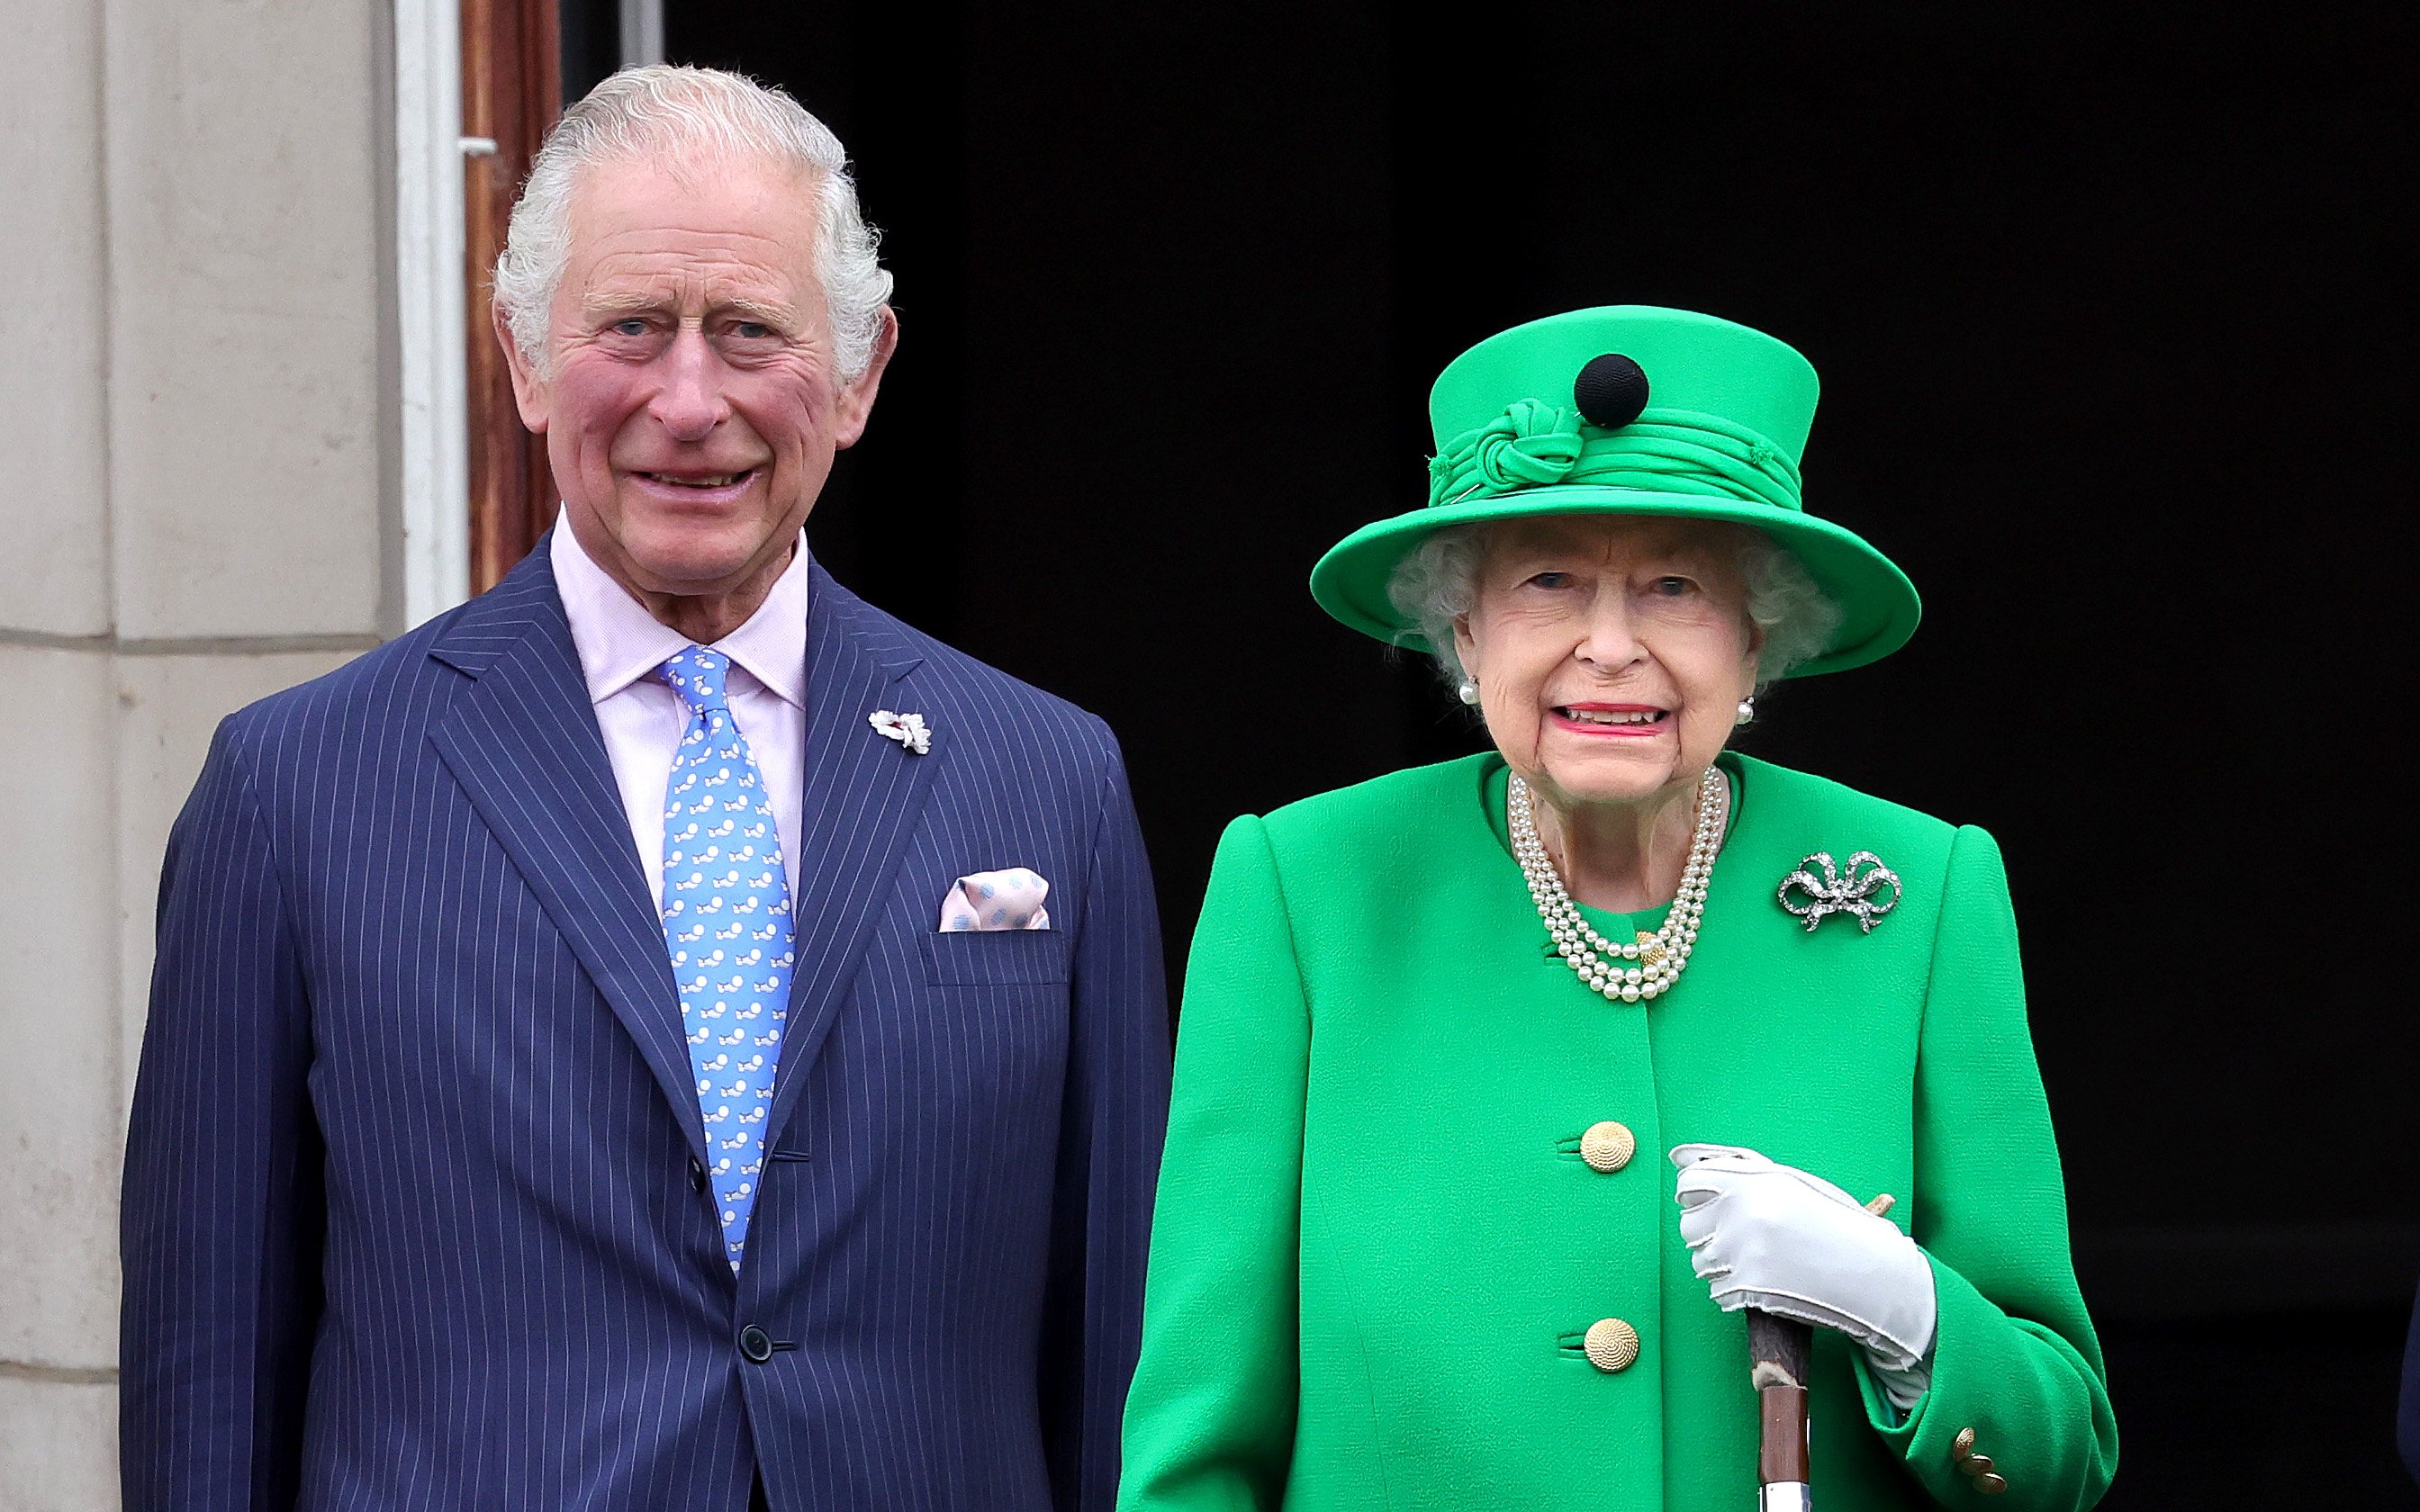 La reine Elizabeth II et le prince Charles, prince de Galles sur le balcon du palais de Buckingham le 5 juin 2022 | Source : Getty Images